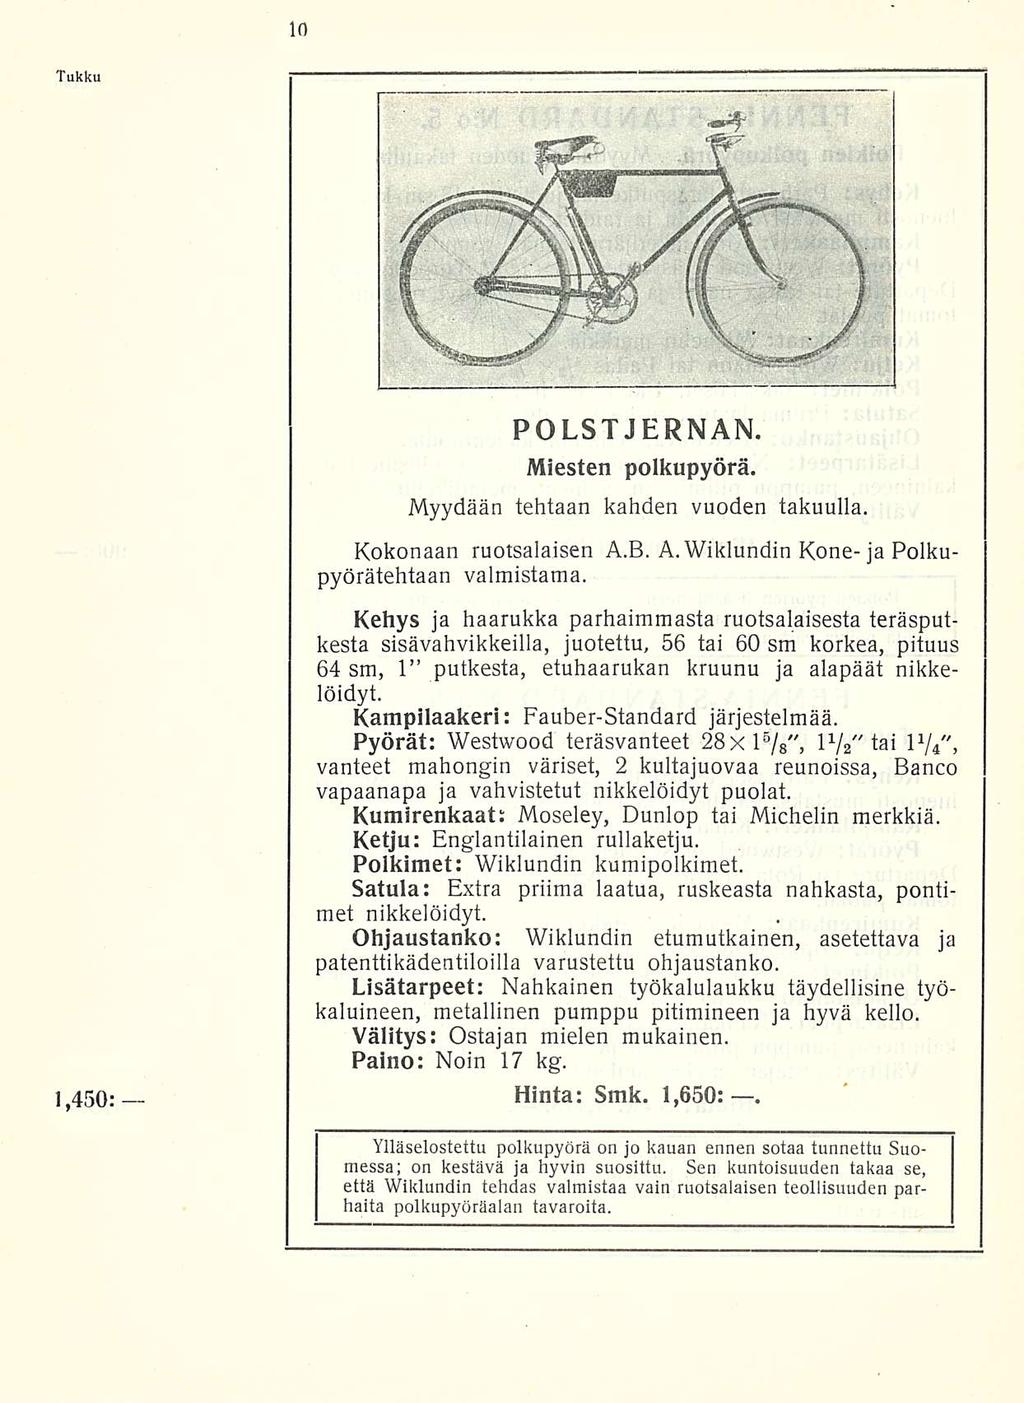 Tukku 1,450 POLST JERNAN. Miesten polkupyörä. Myydään tehtaan kahden vuoden takuulla. Kokonaan ruotsalaisen A.B. A. Wiklundin Kone- ja Polkupyöräteittään valmistama.